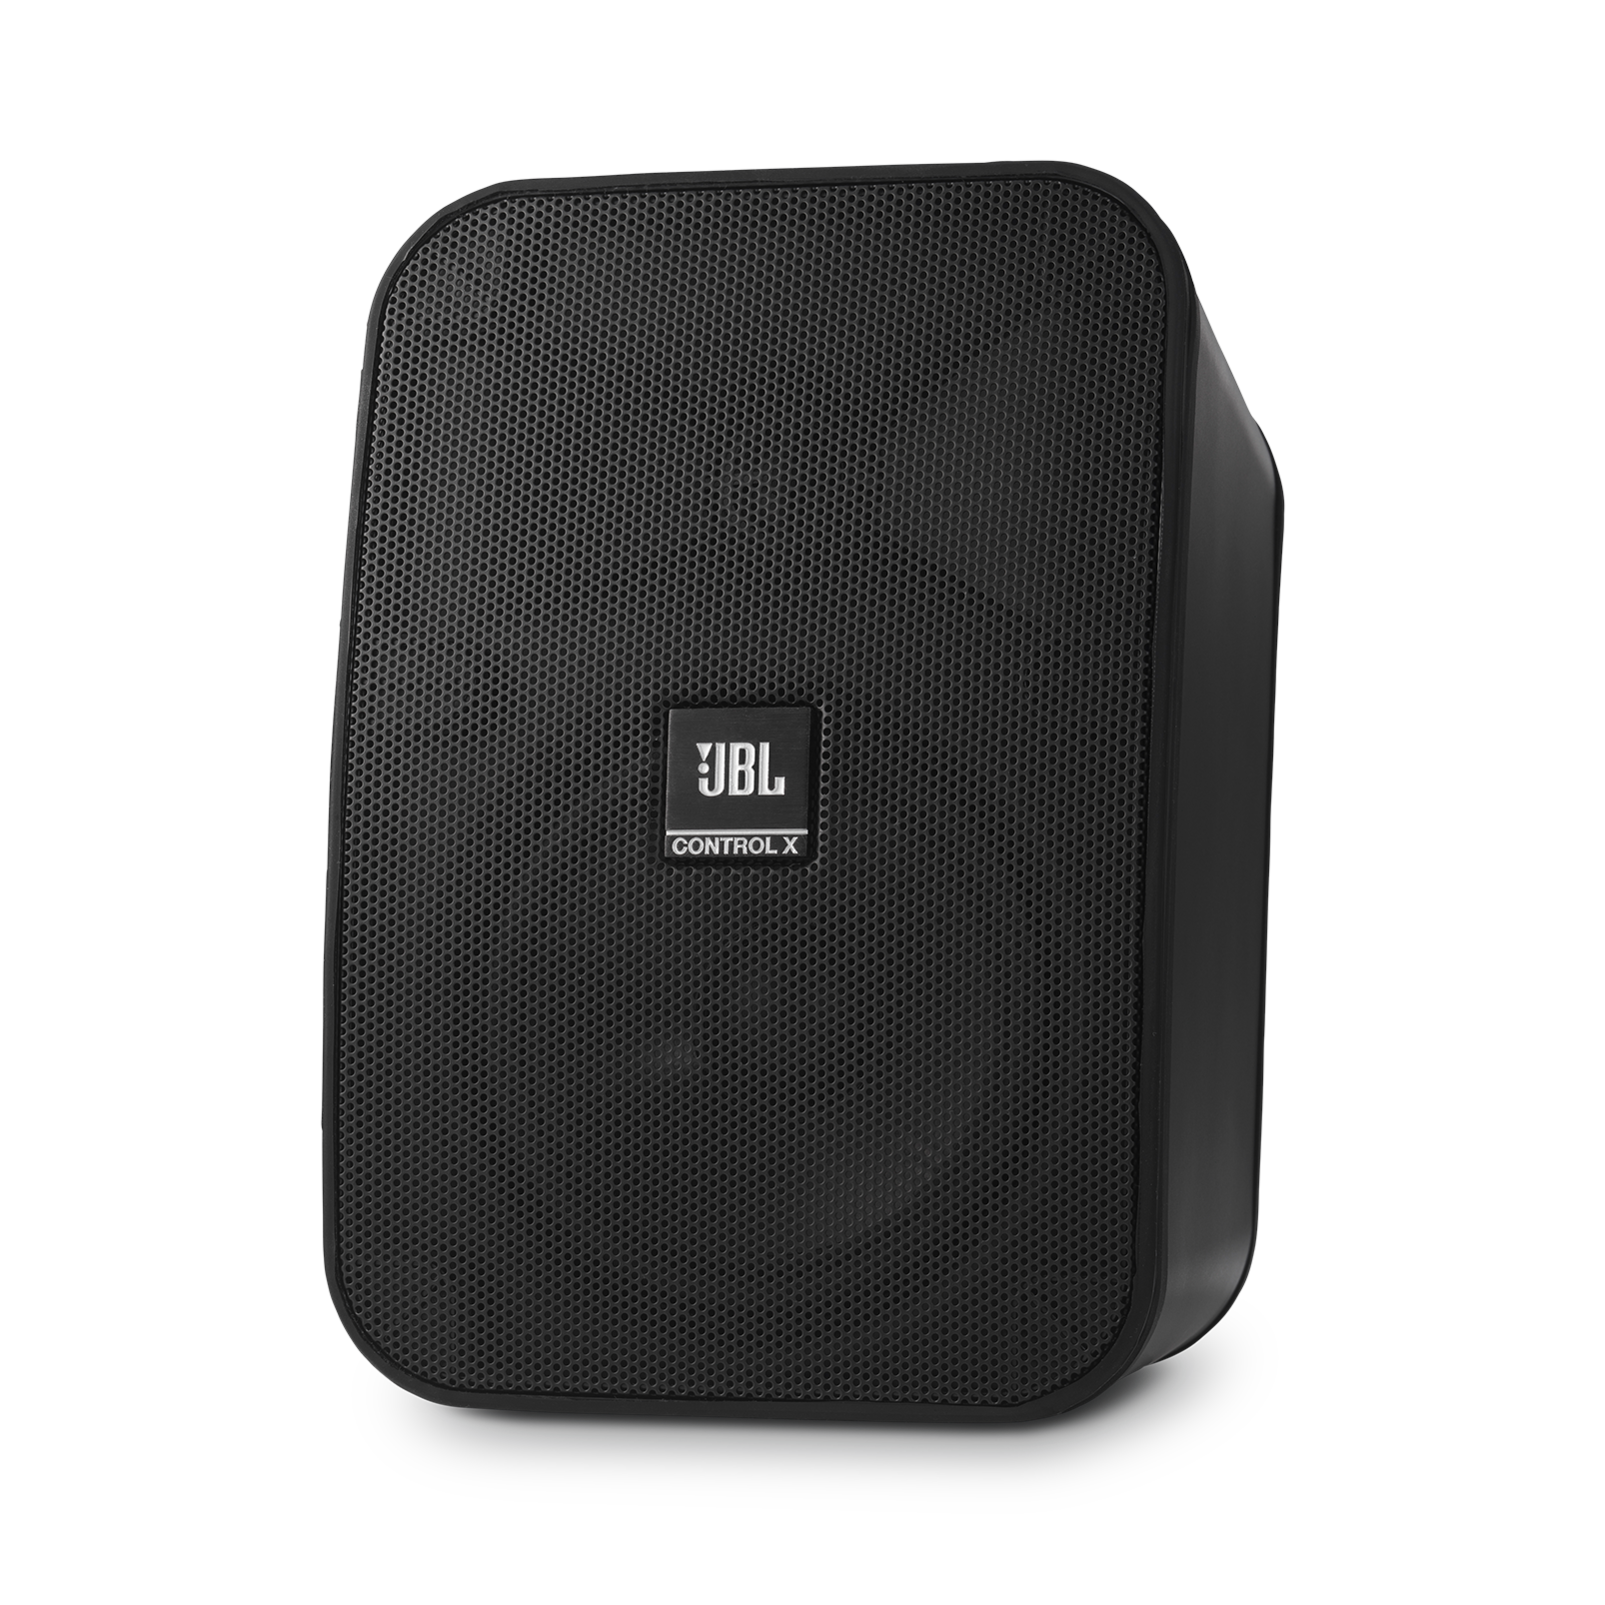 JBL Control X - Black - 5.25” (133mm) Indoor / Outdoor Speakers - Detailshot 5